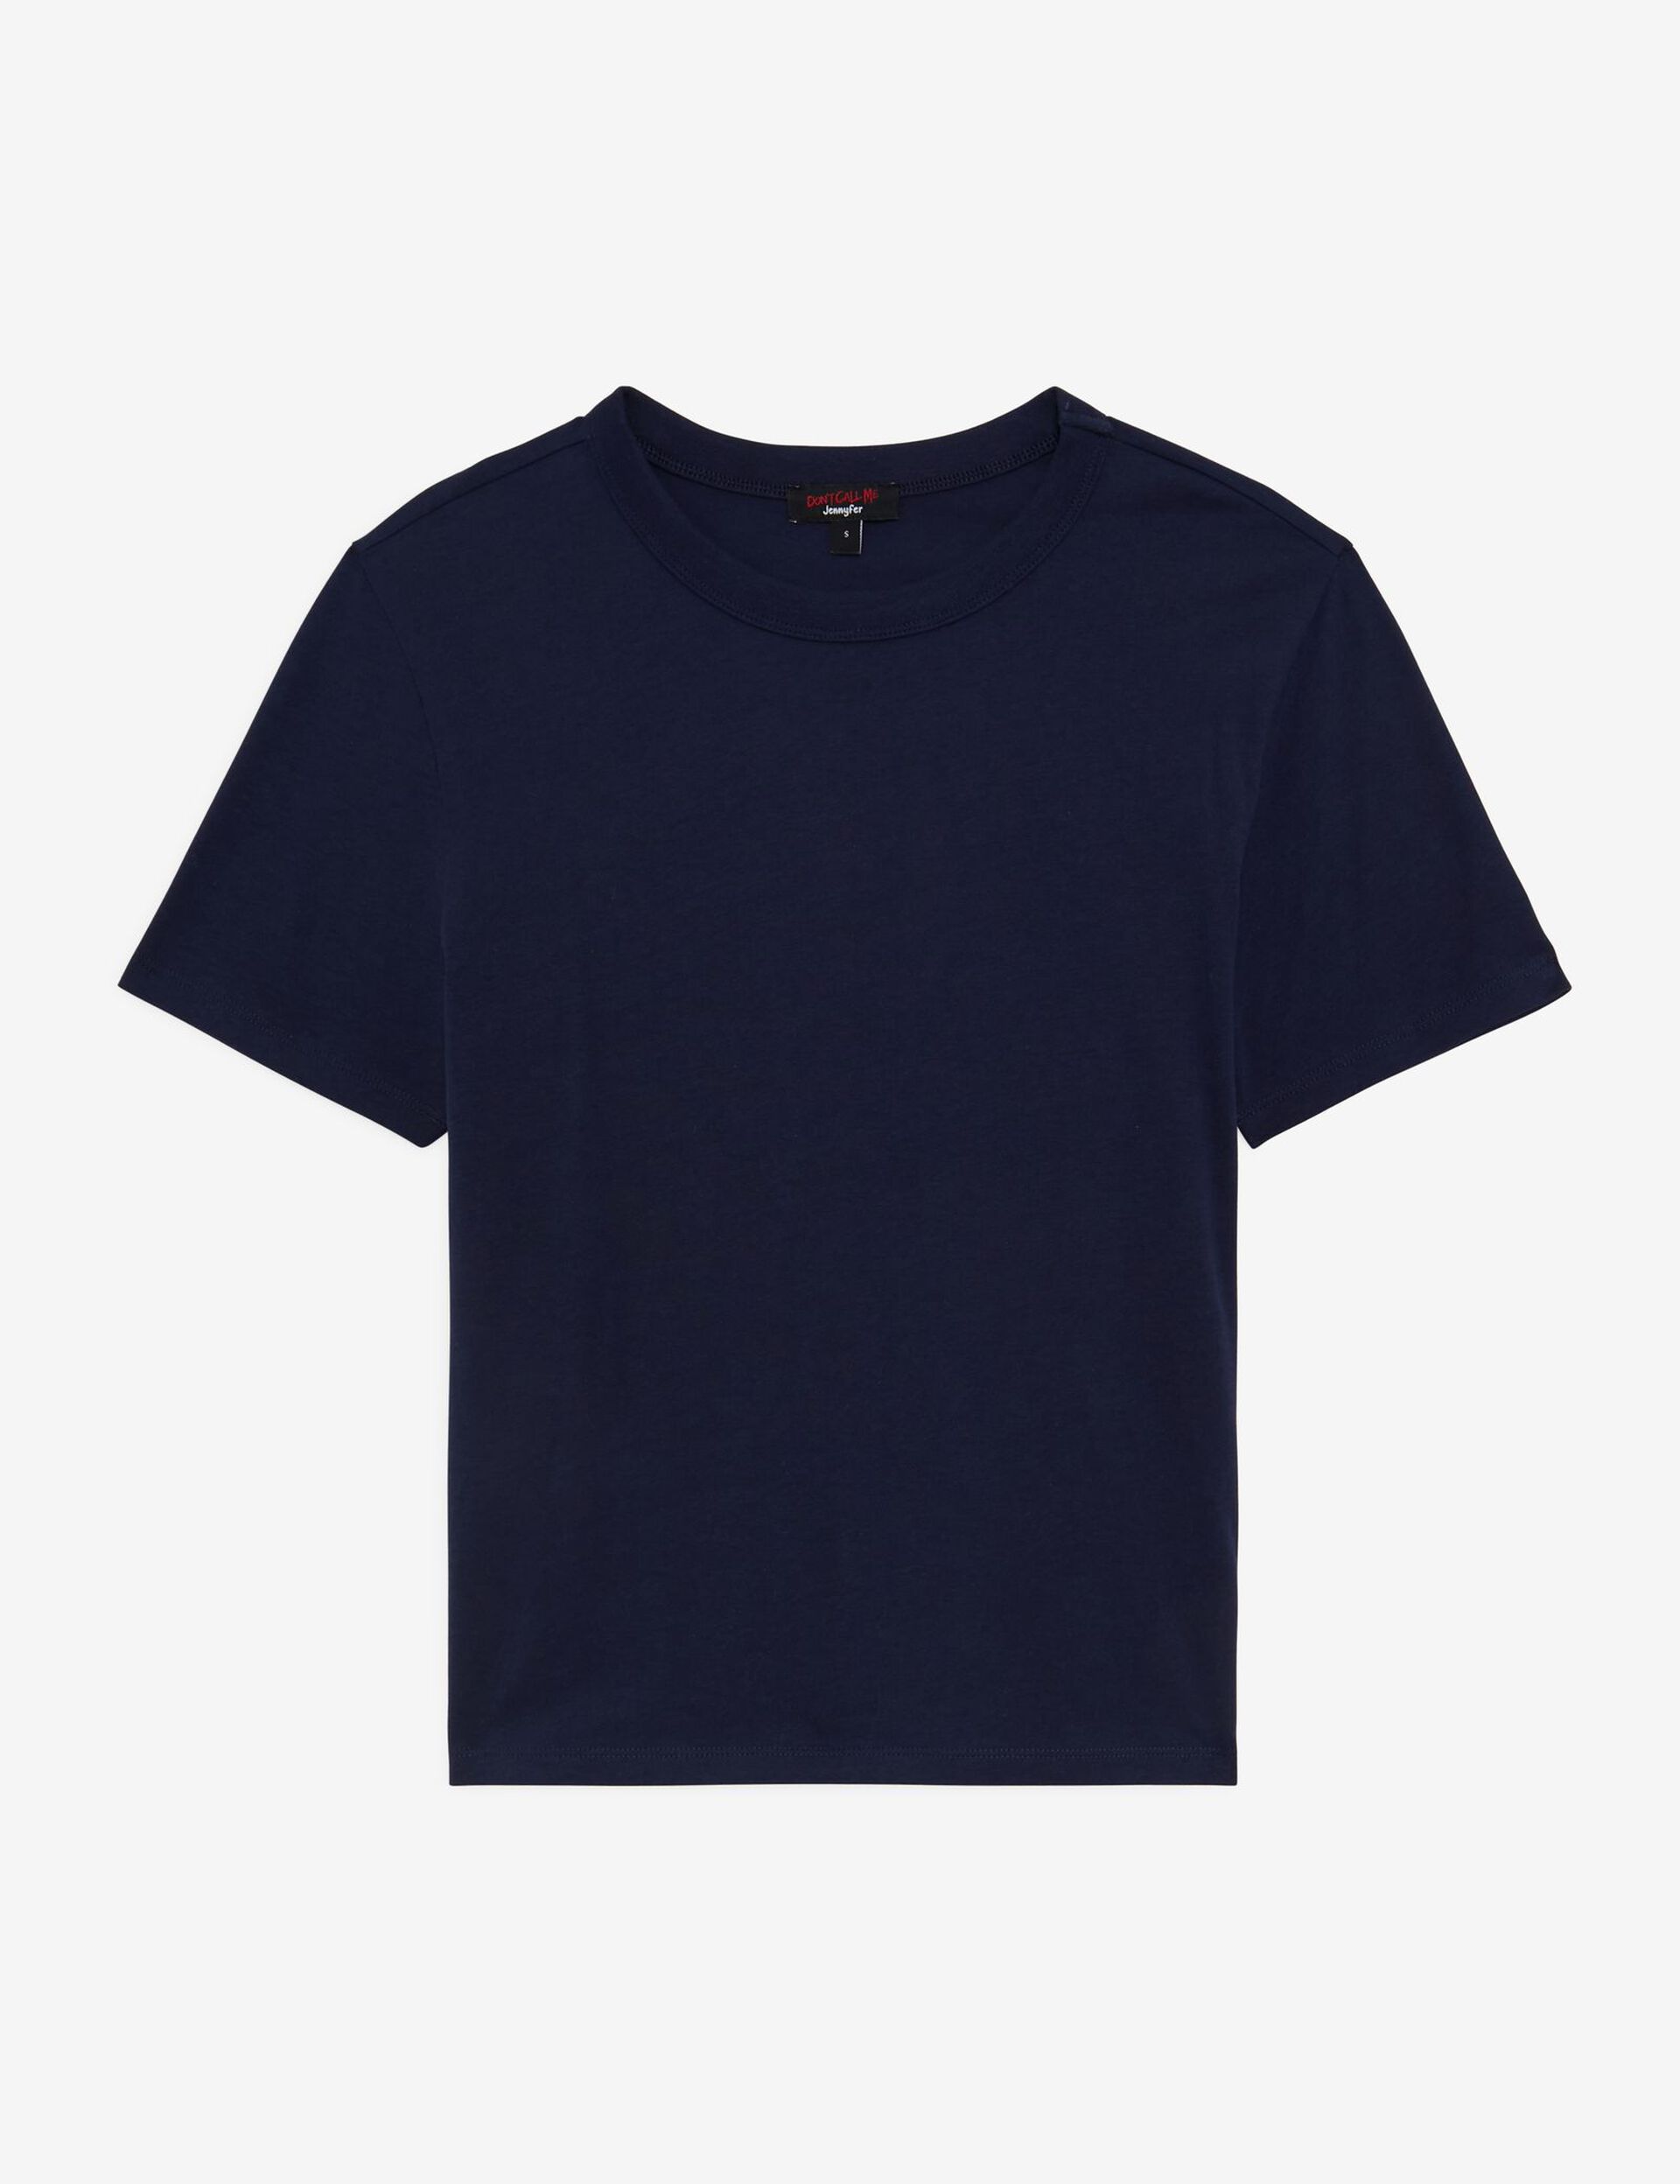 Tee-shirt basic bleu marine